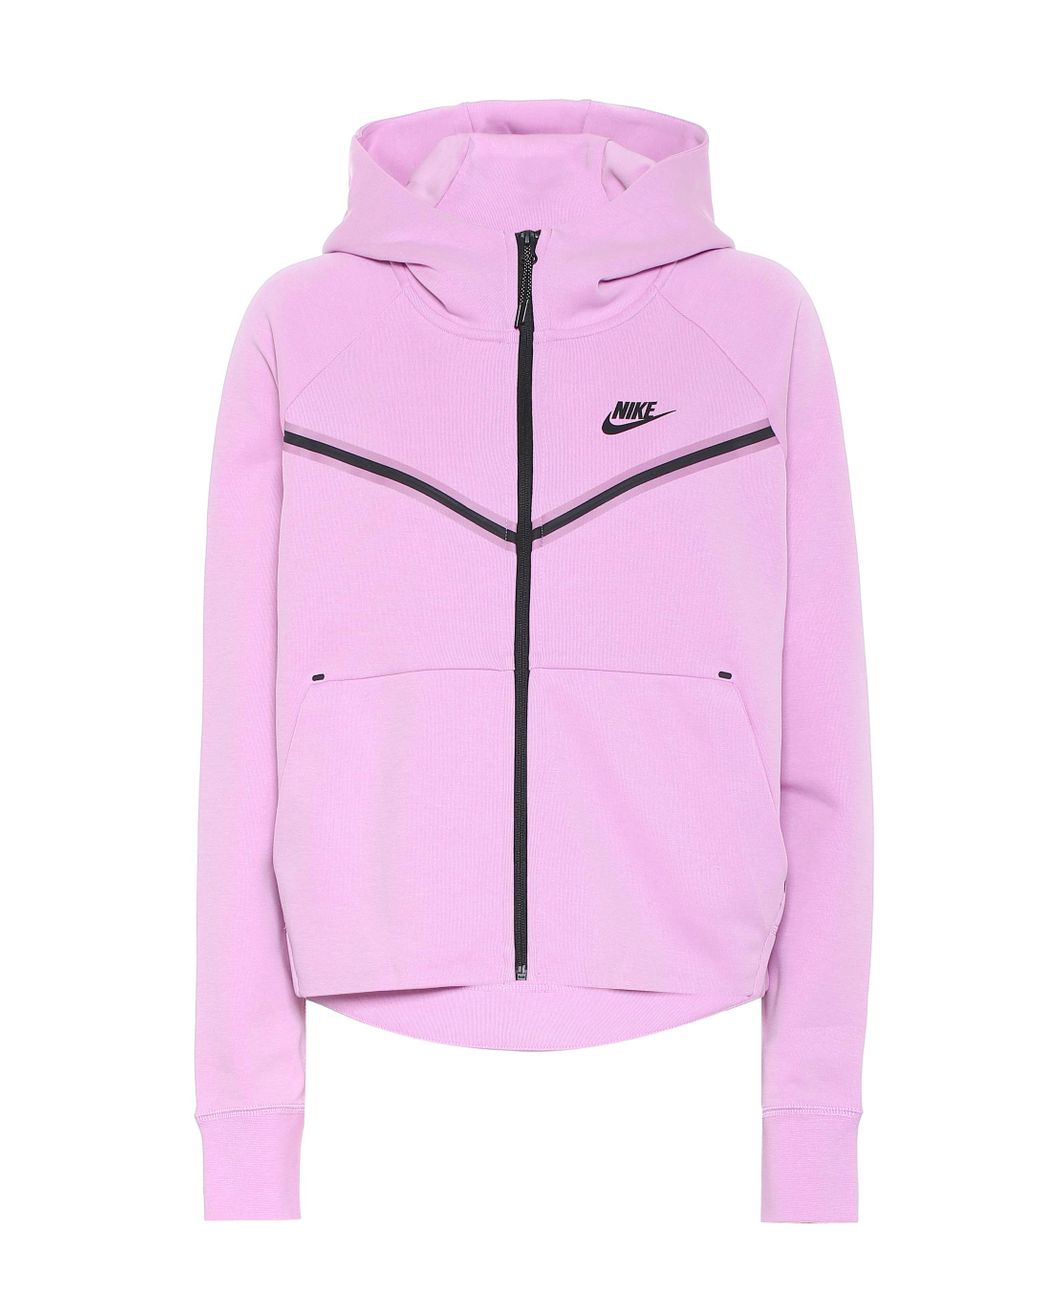 Nike Sportswear Tech Fleece Full-zip Long Sleeve in Pink | Lyst Australia